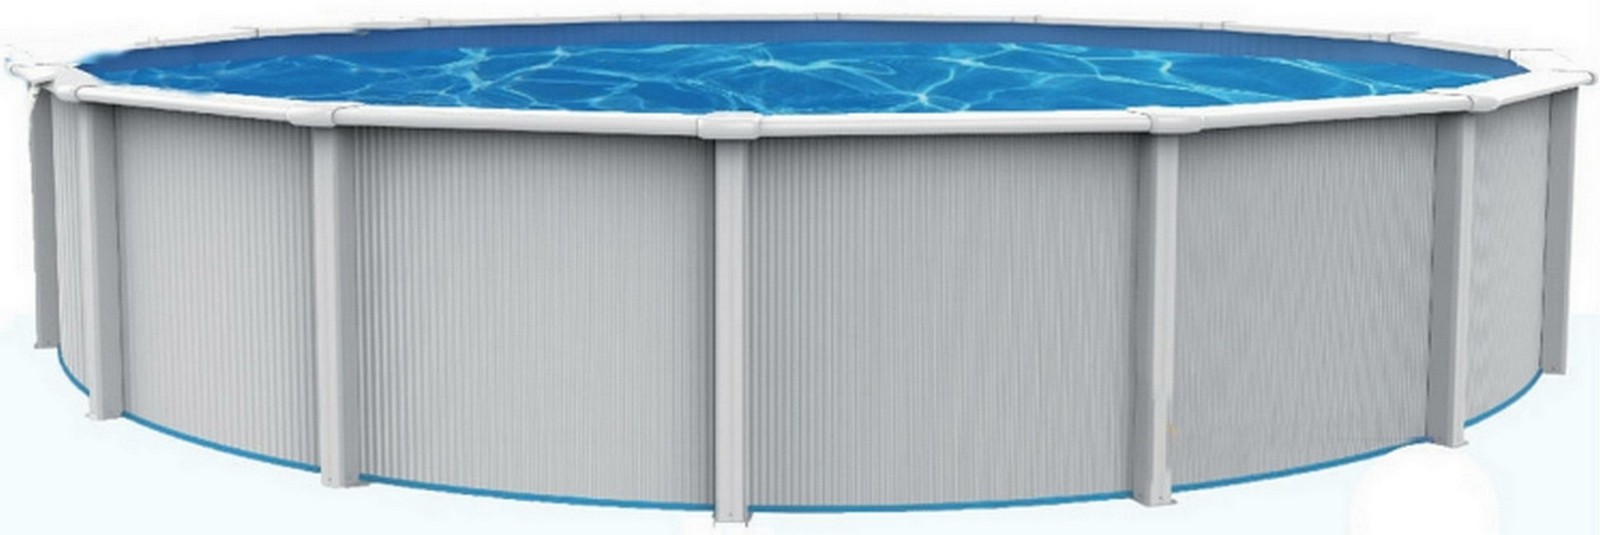 Морозоустойчивый бассейн Poolmagic Sky круглый 550x130 см, комплект Standart (фильтр IntexBestway),  - купить со скидкой